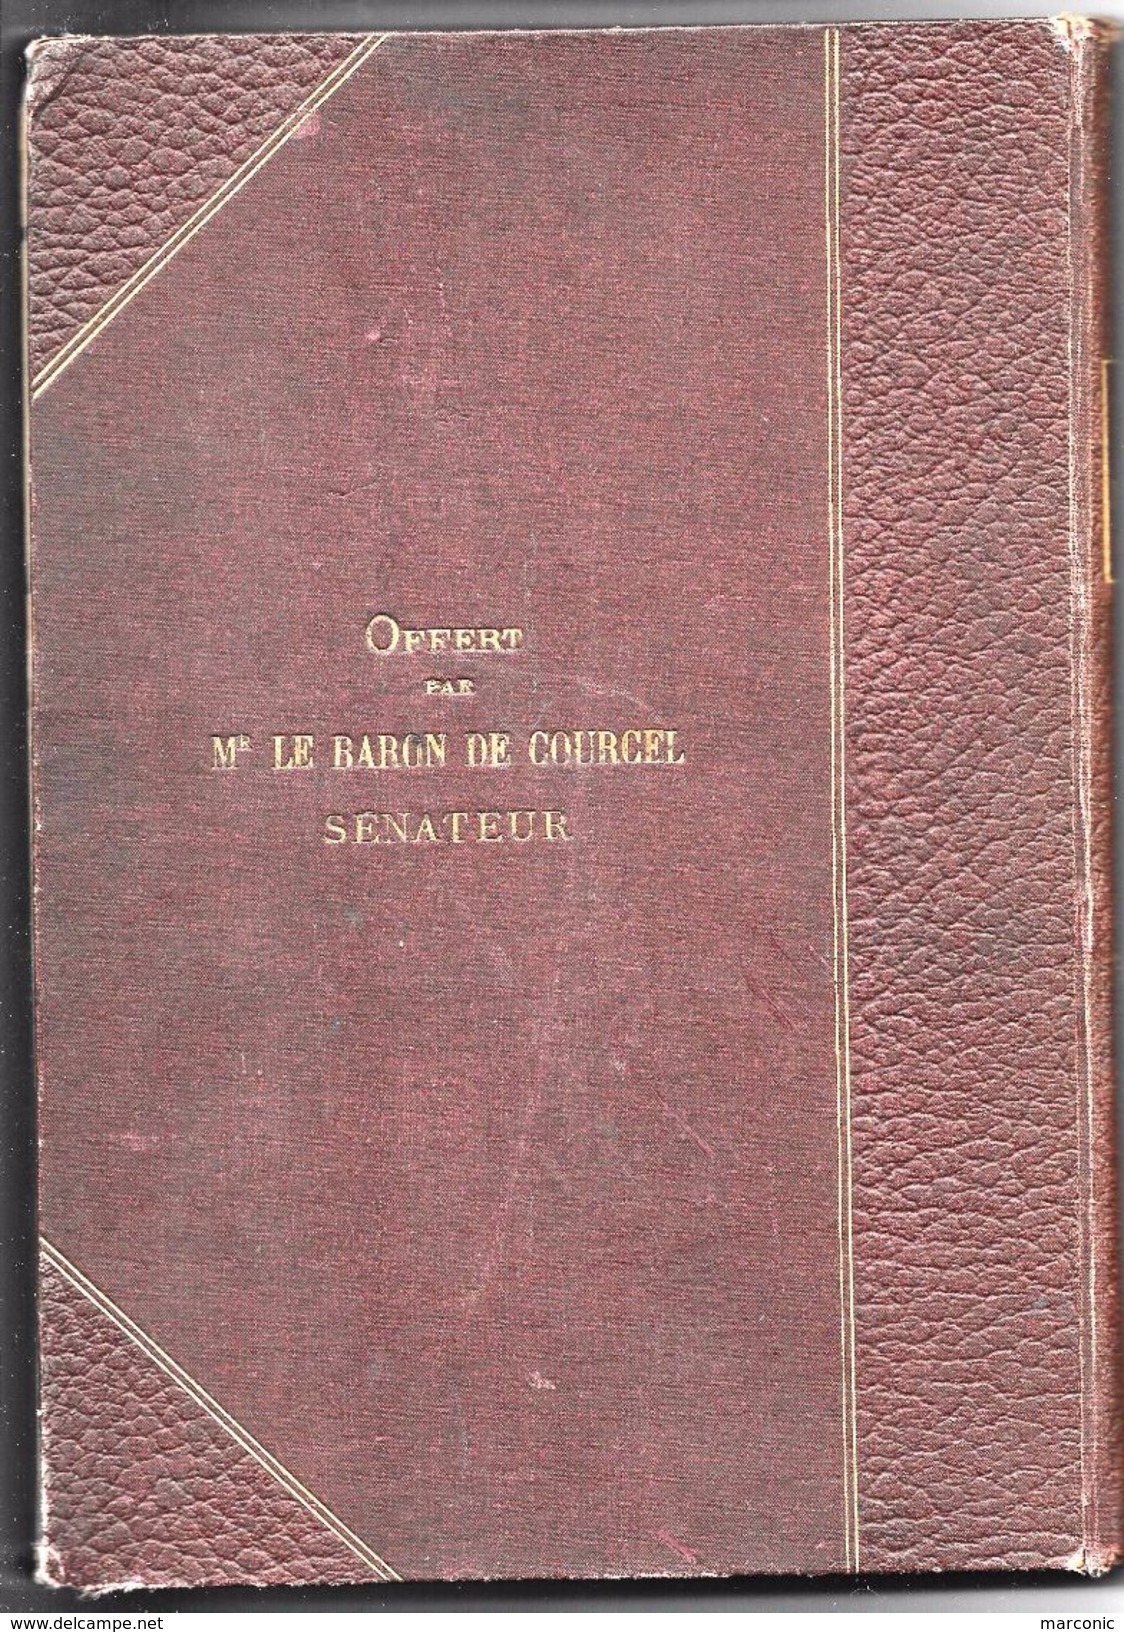 Les Plantes Originales - H. COUPIN - Livre Offert Par Le Baron De Courcel - 1901-1940